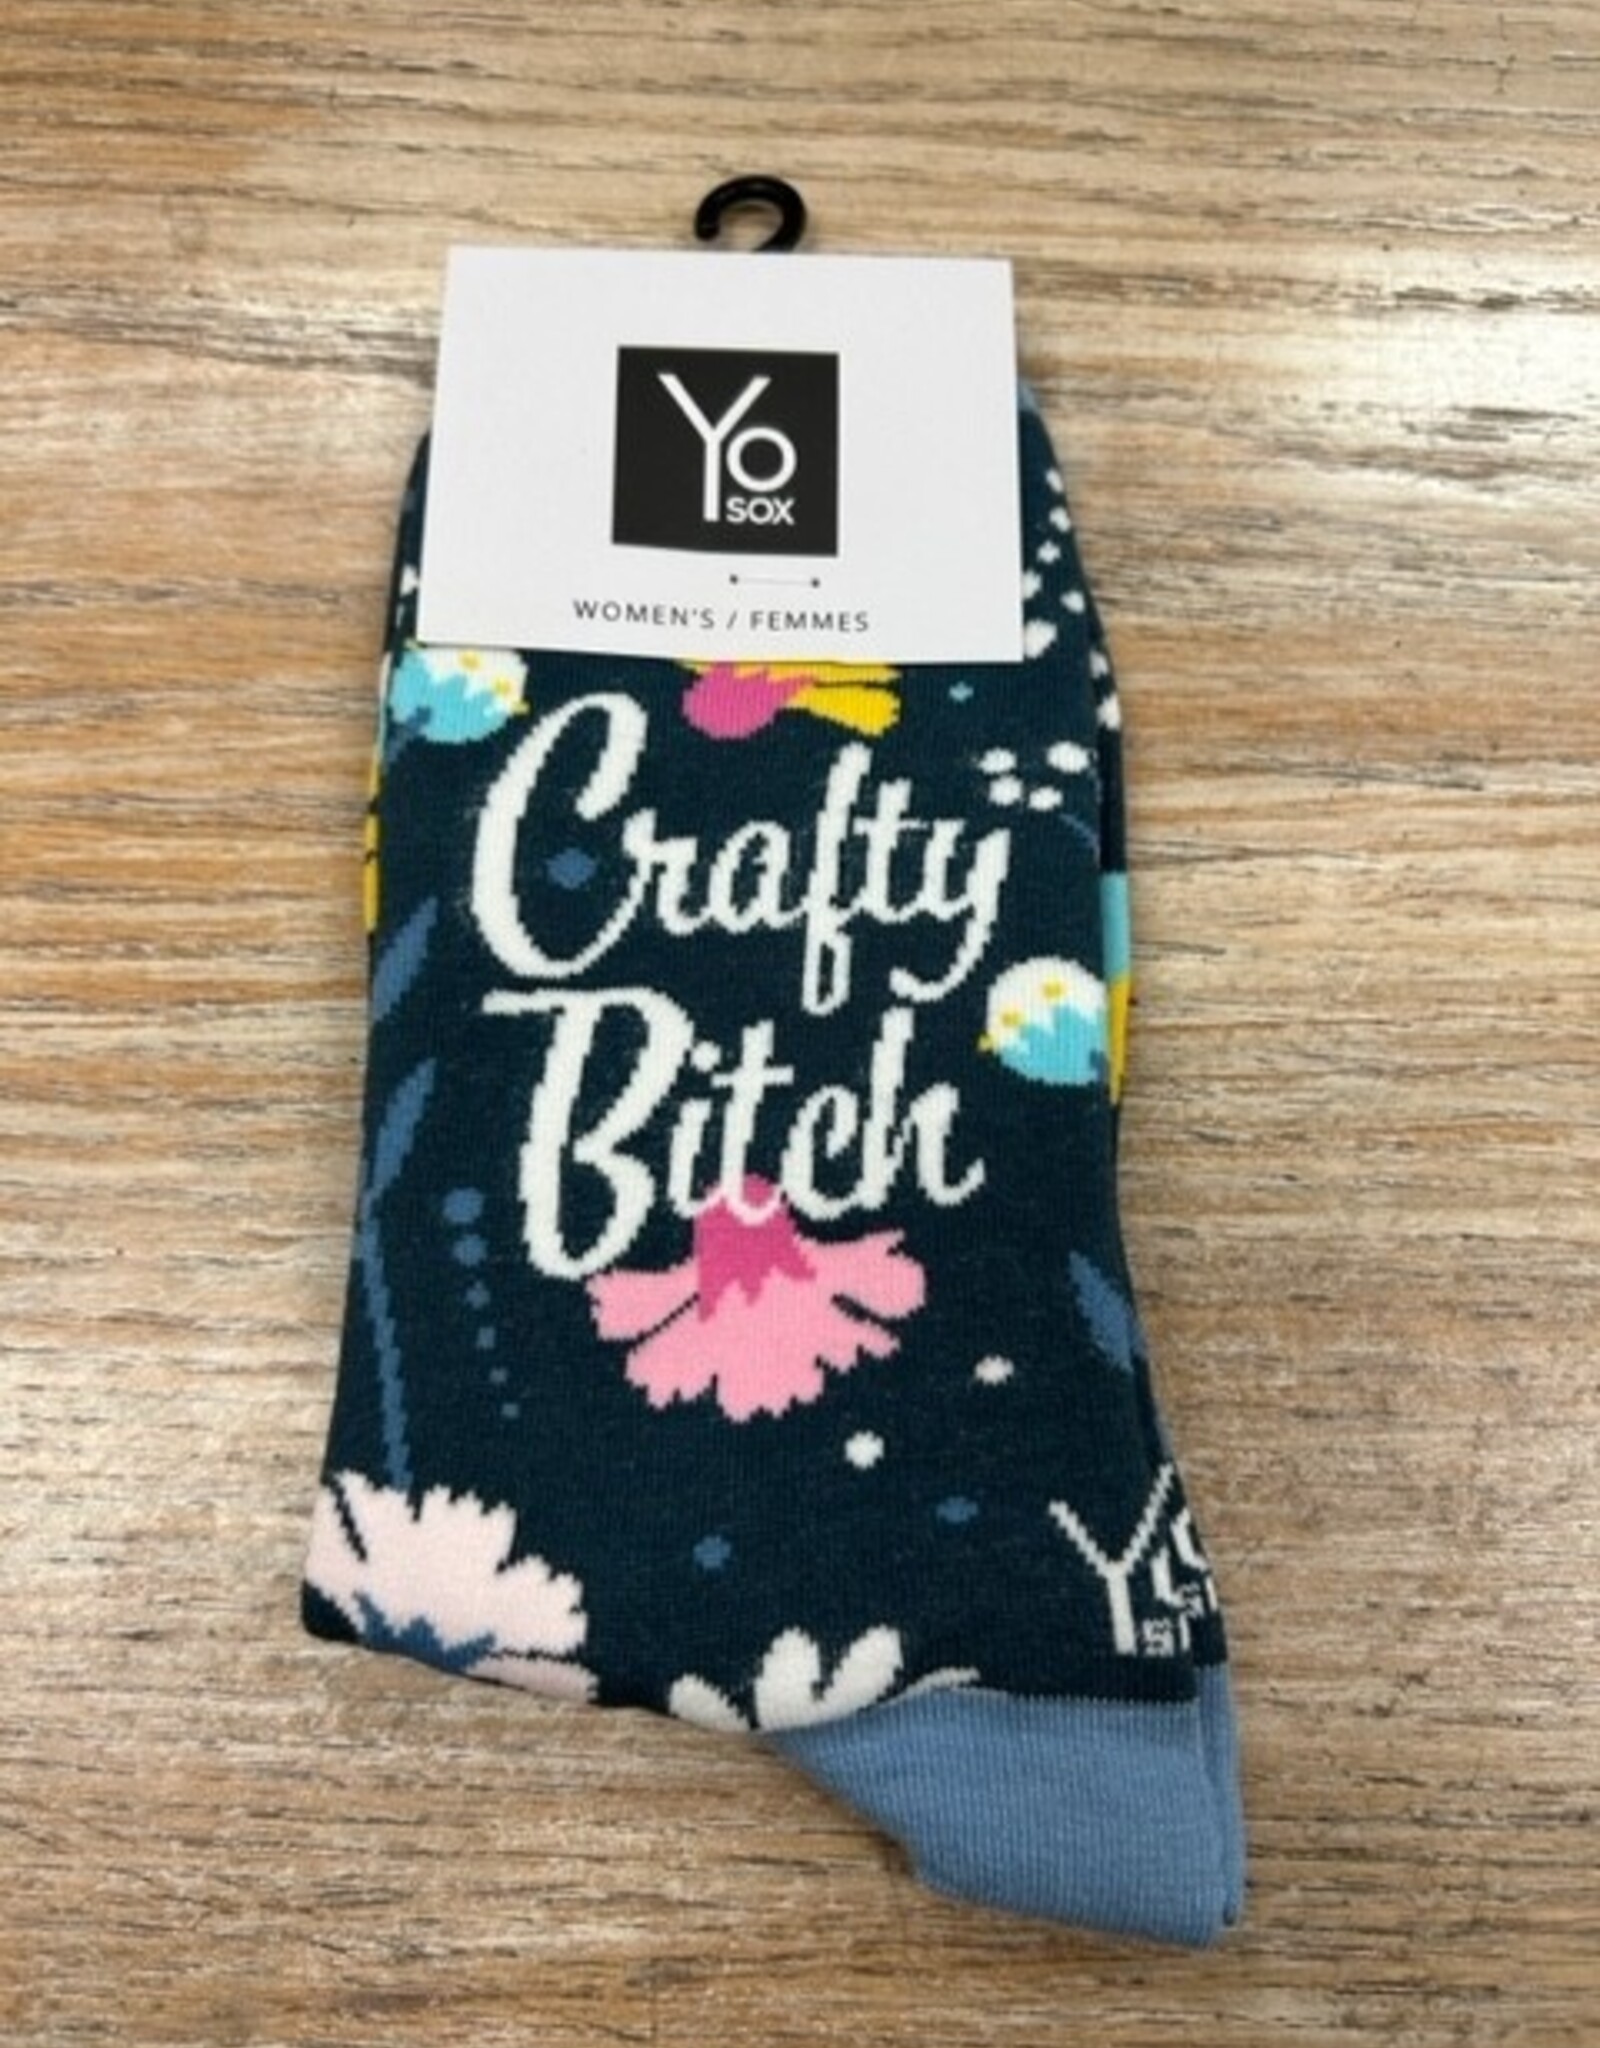 Socks Women's Crew Socks- Crafty Bitch